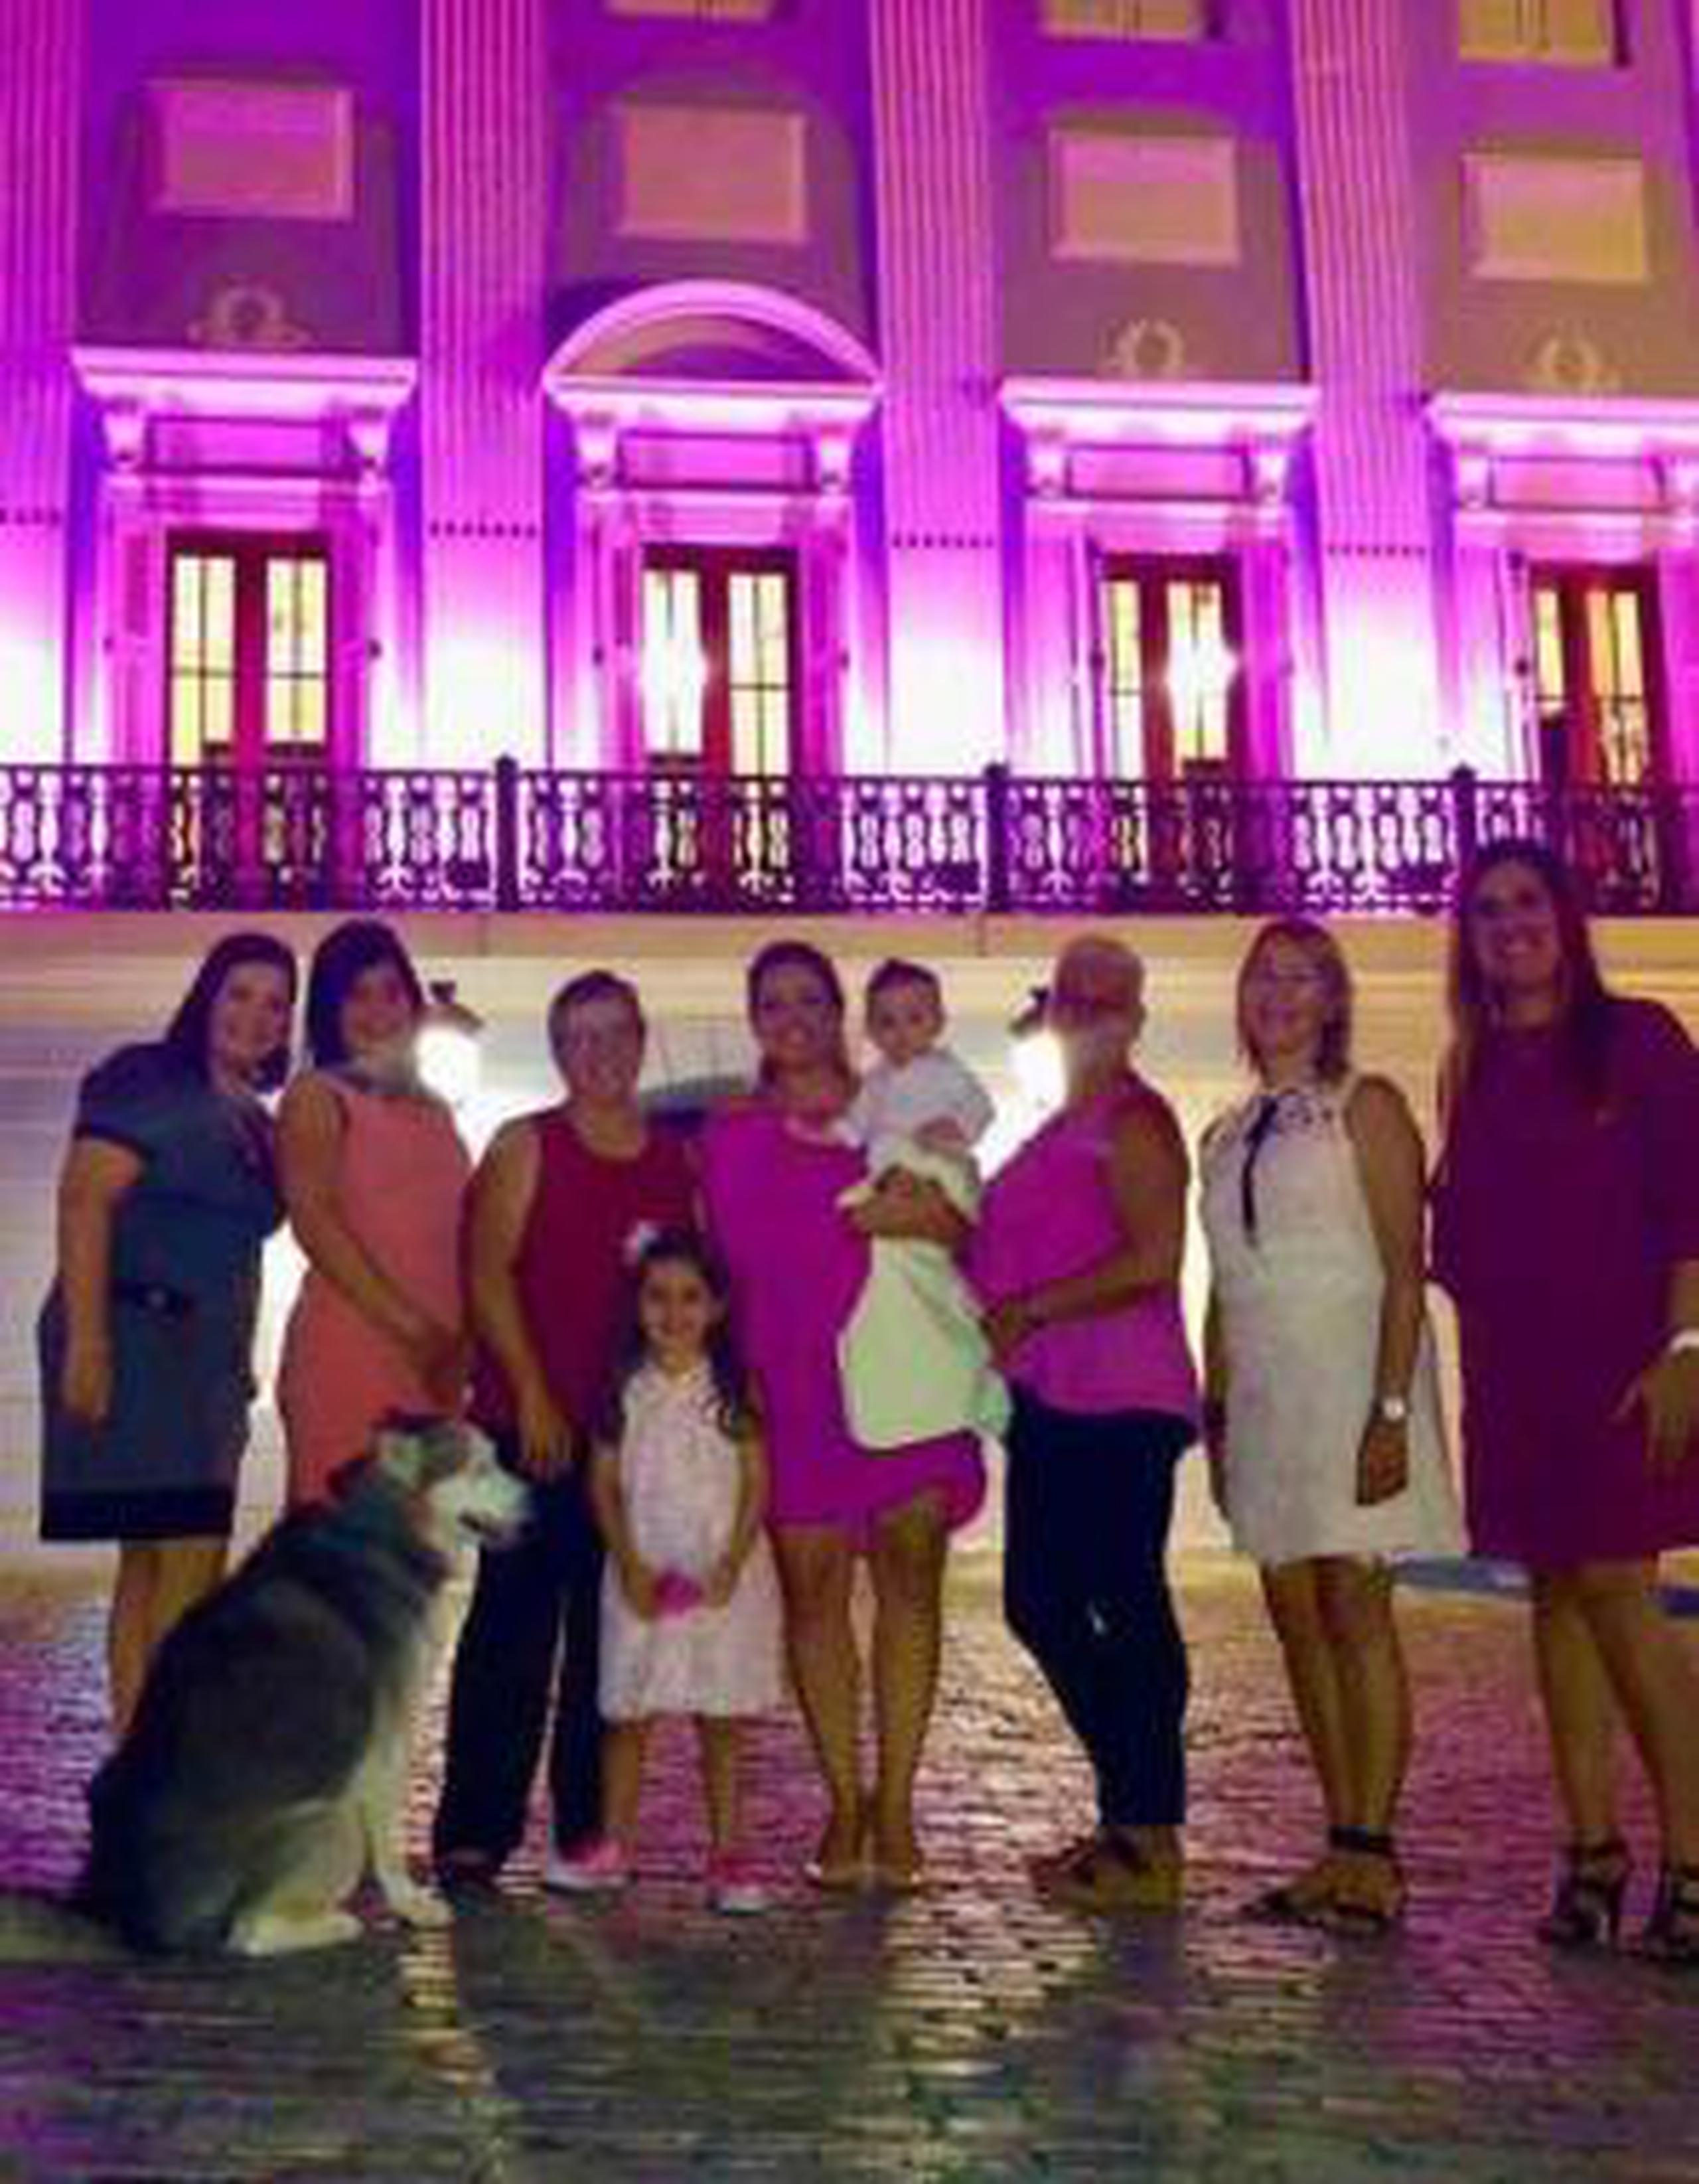 Durante la noche de hoy se iluminó de rosa La Fortaleza en compañía de miembros de la junta de directores de la fundación Susan G. Komen. (Suministrada)